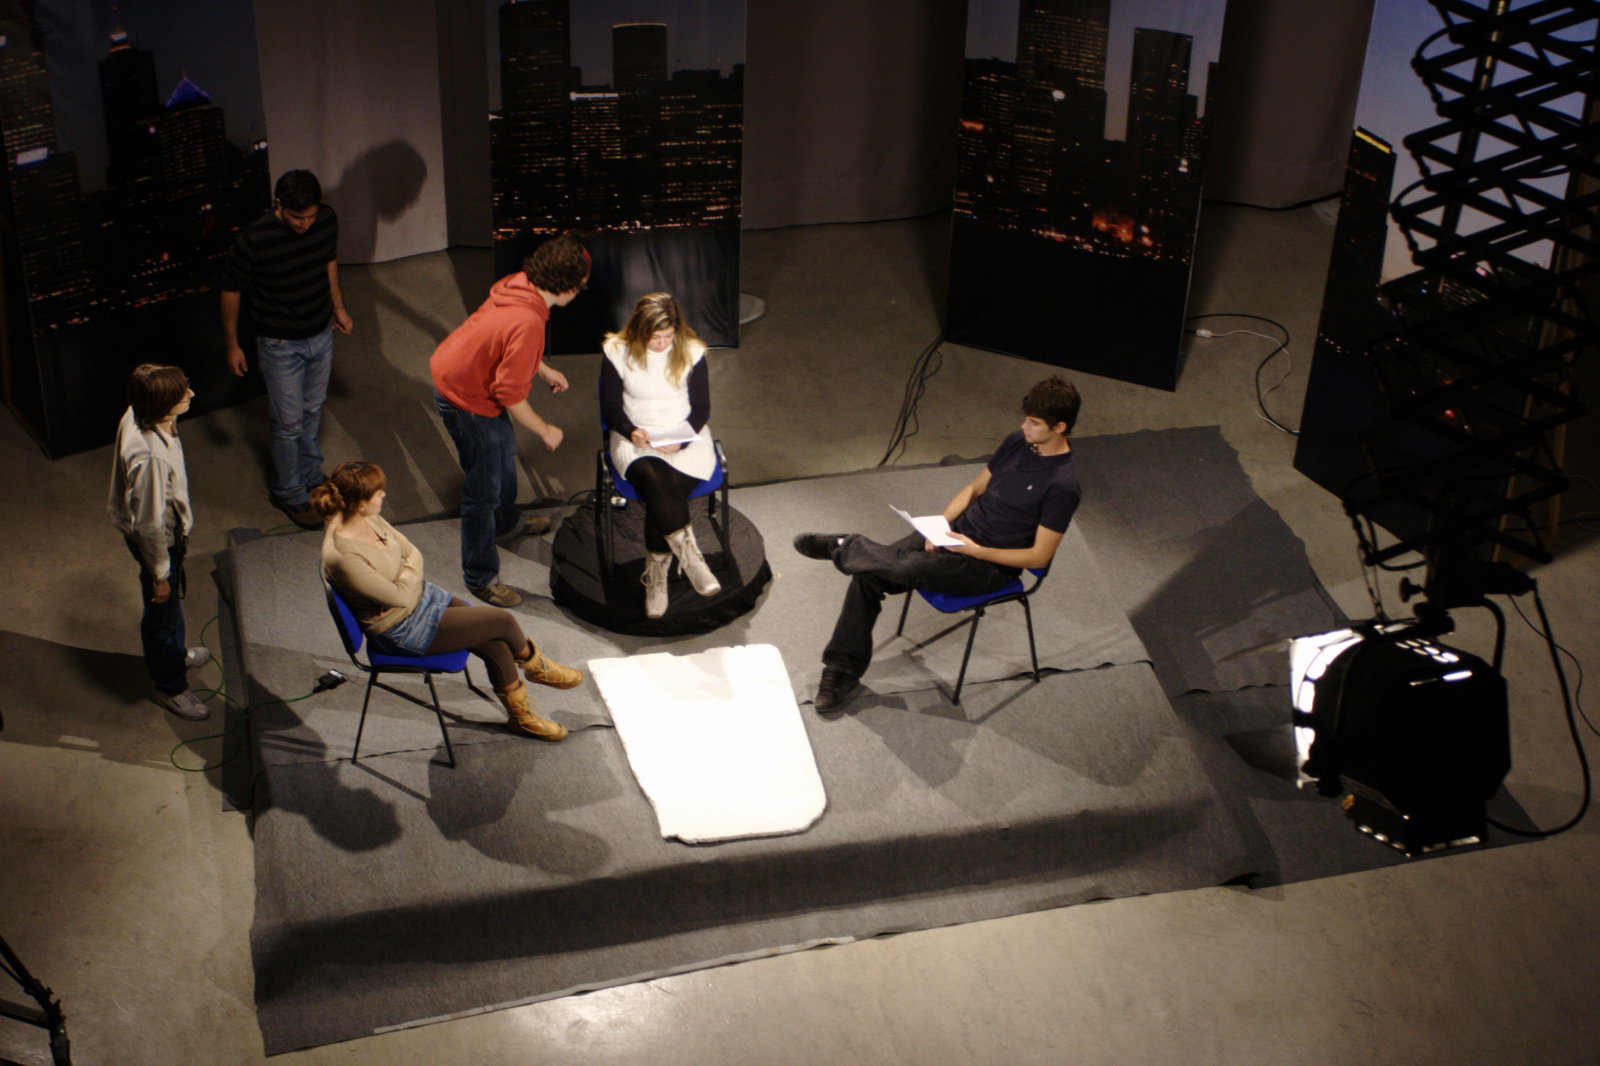 Escuela de Imagen y Sonido de Vigo EISV. Plató profesional de televisión - plató 200 - prácticas de realización